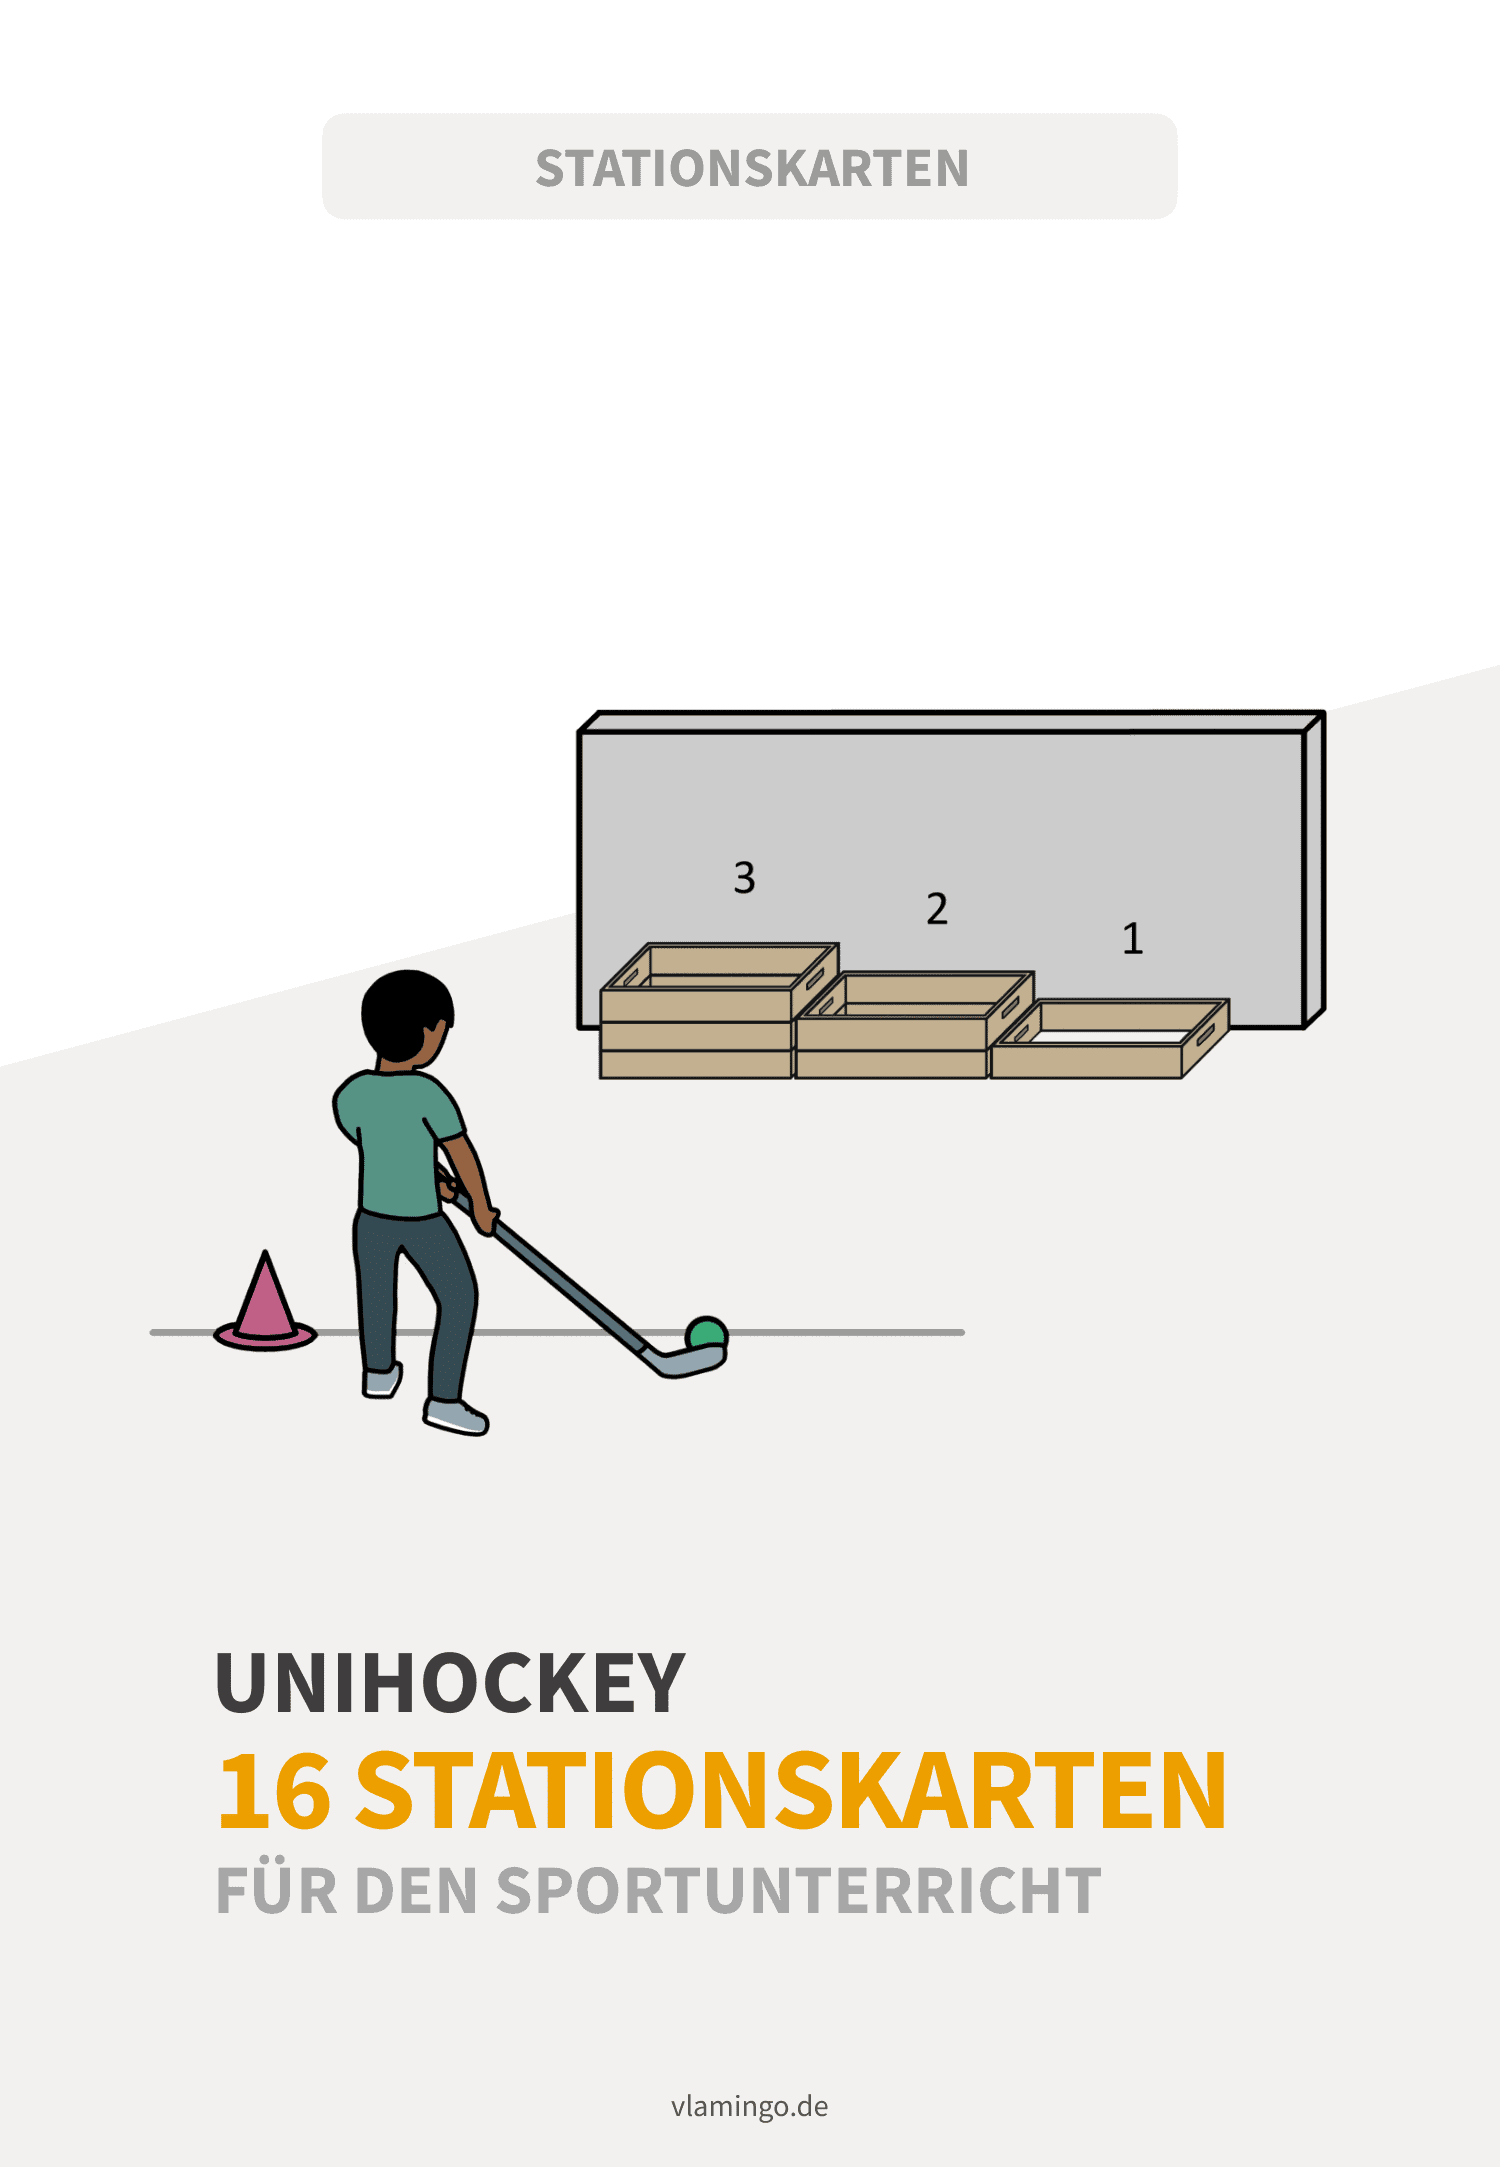 Unihockey - 16 Stationskarten für den Sportunterricht